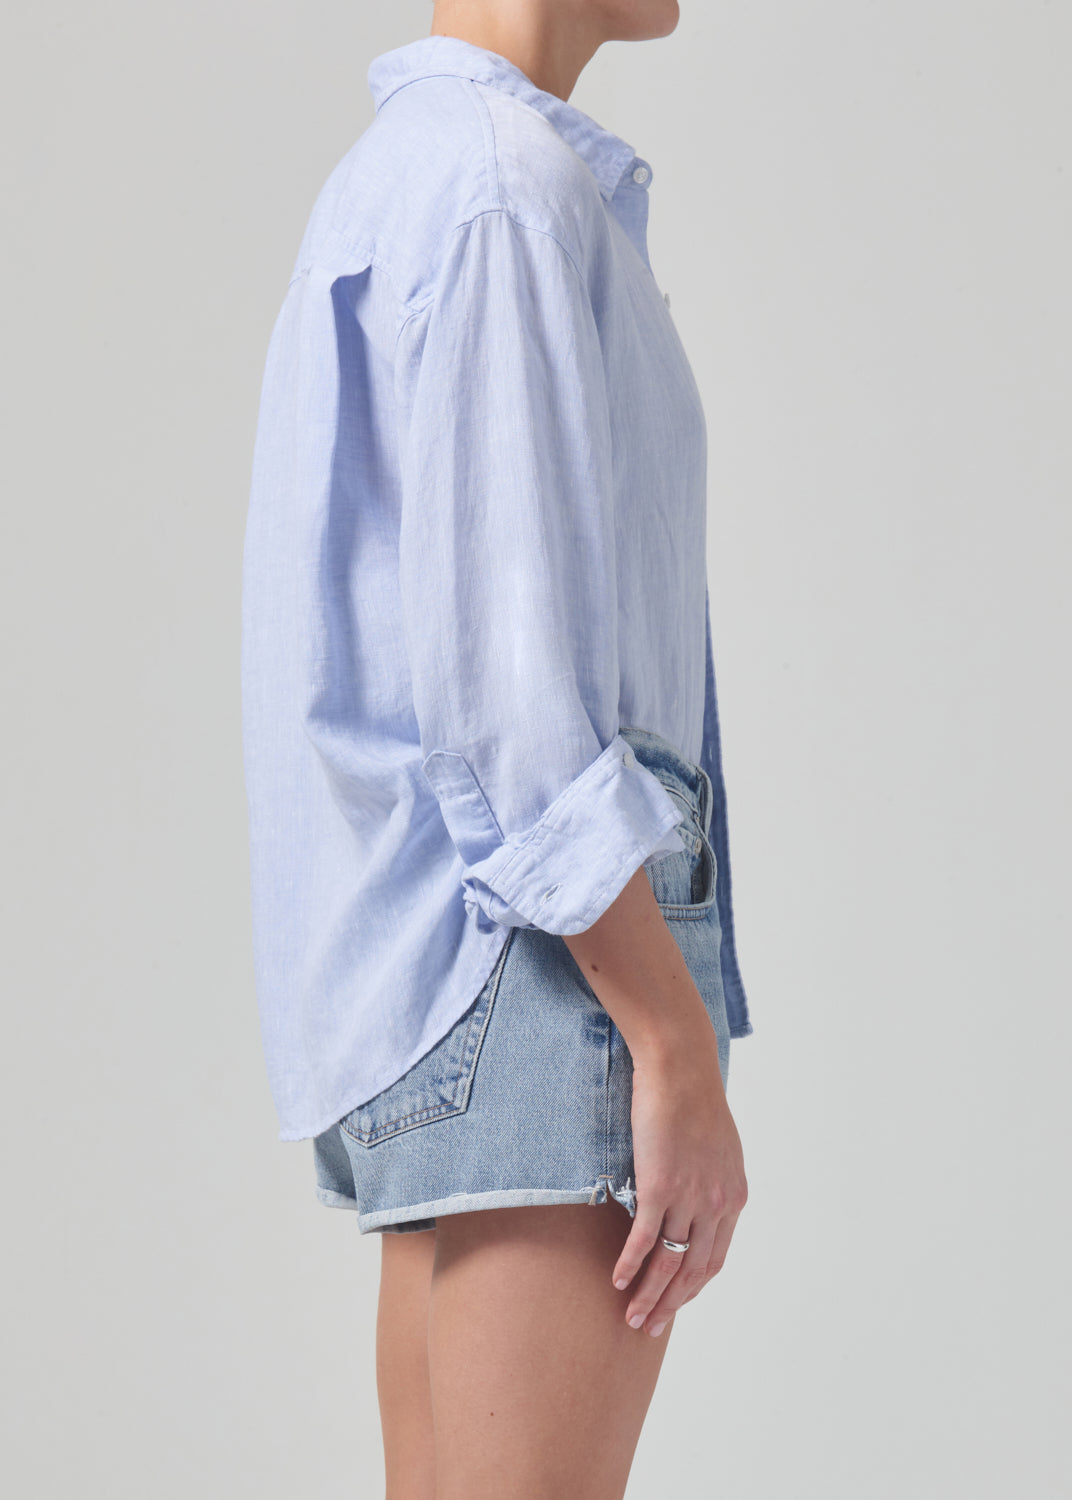 Kayla Shrunken Linen Shirt in Glint